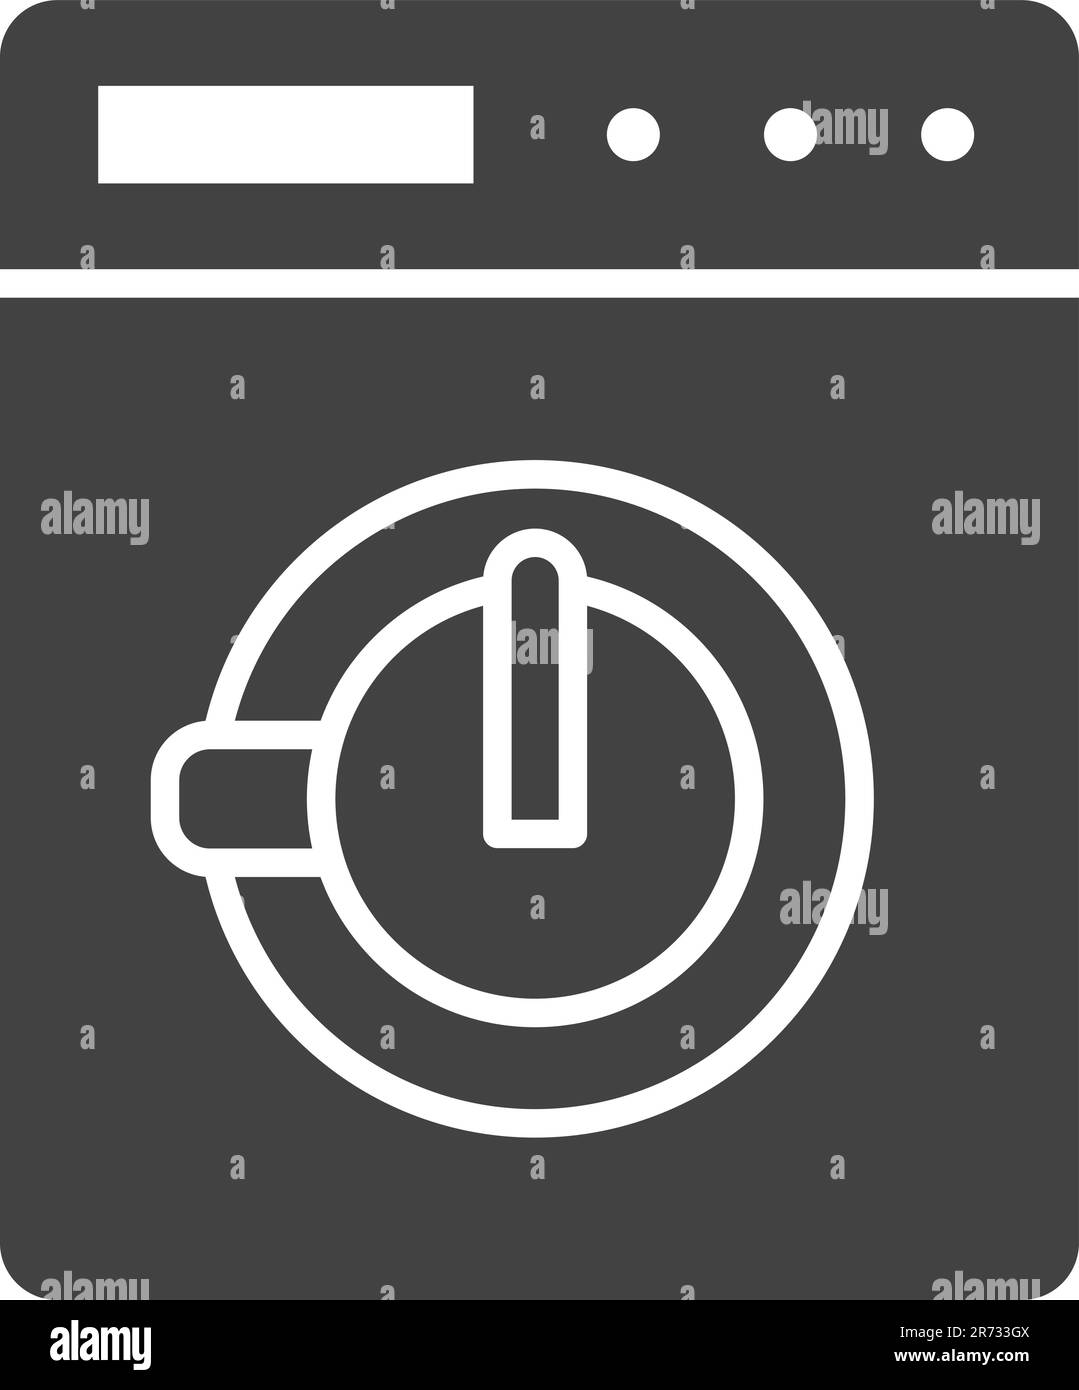 Immagine vettoriale dell'icona del programma di lavaggio. Illustrazione Vettoriale